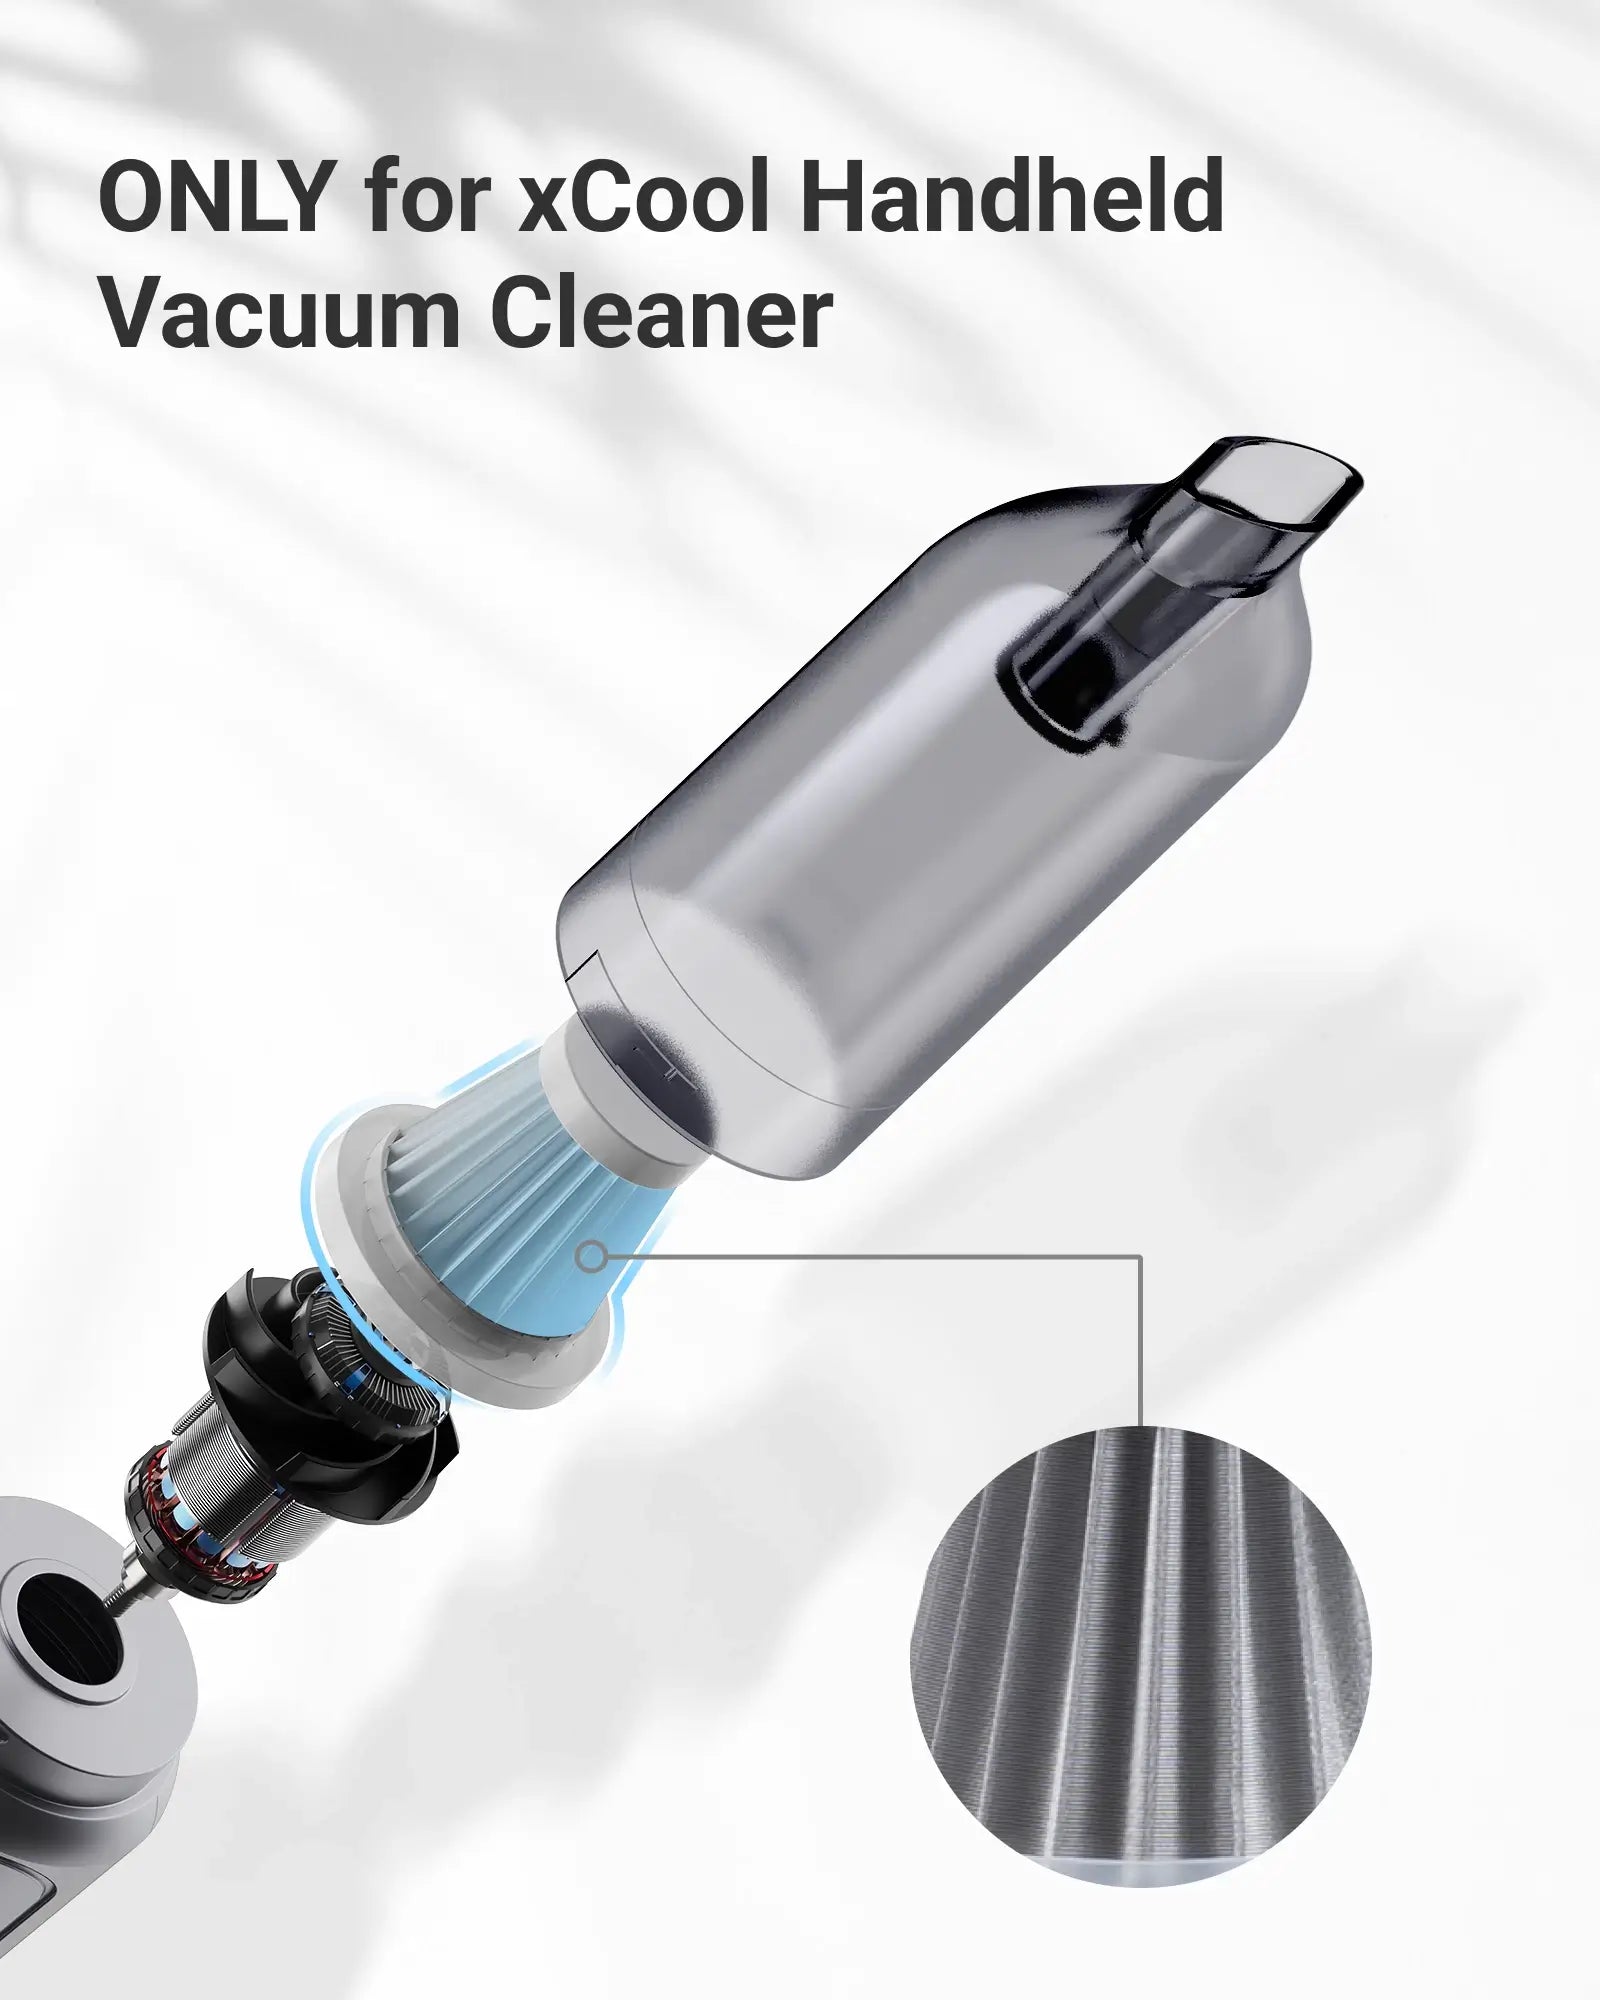 washable-vacuum-filter-replacement-description7